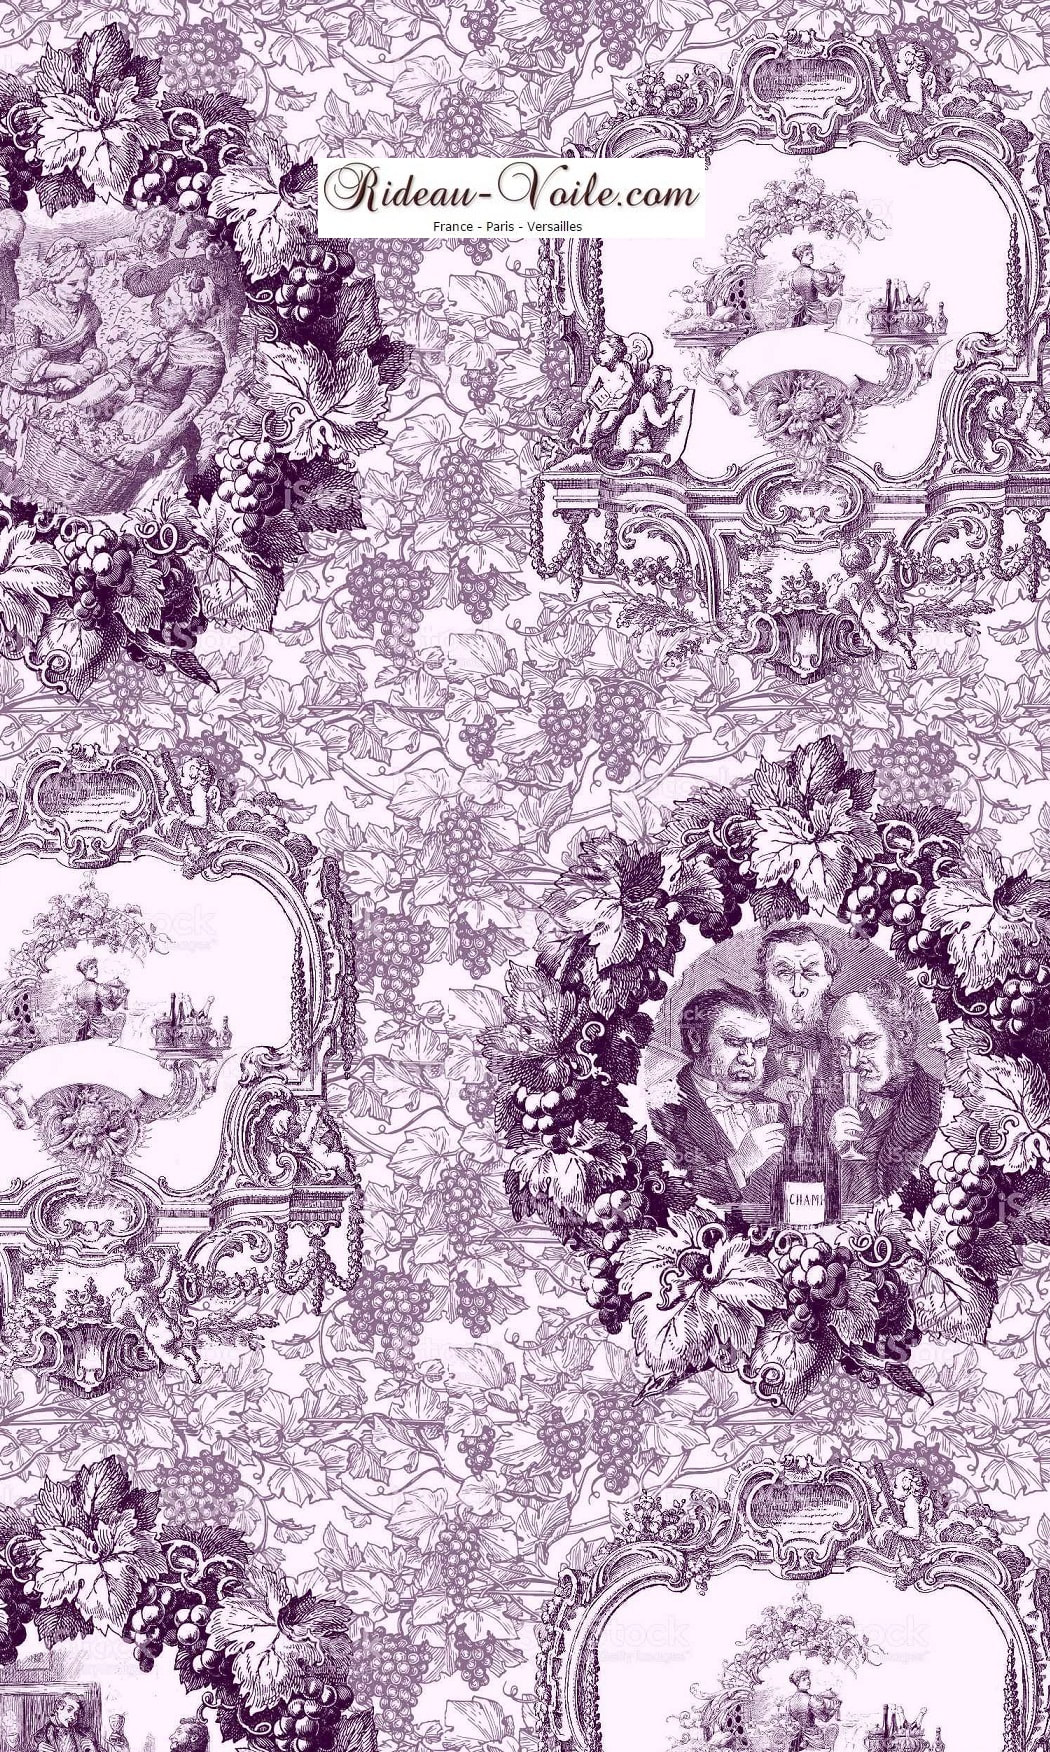 Tissu imprimé Toile de Jouy violet Tissu au mètre comment acheter trouver boutique Paris toile de jouy  pour décoration, agencement,  haut gamme sur mesure. Papier peint, luminaire, abat-jour, rideau, couette et coussin. ignifugé, occultant, Versailles, Nice, Monaco.